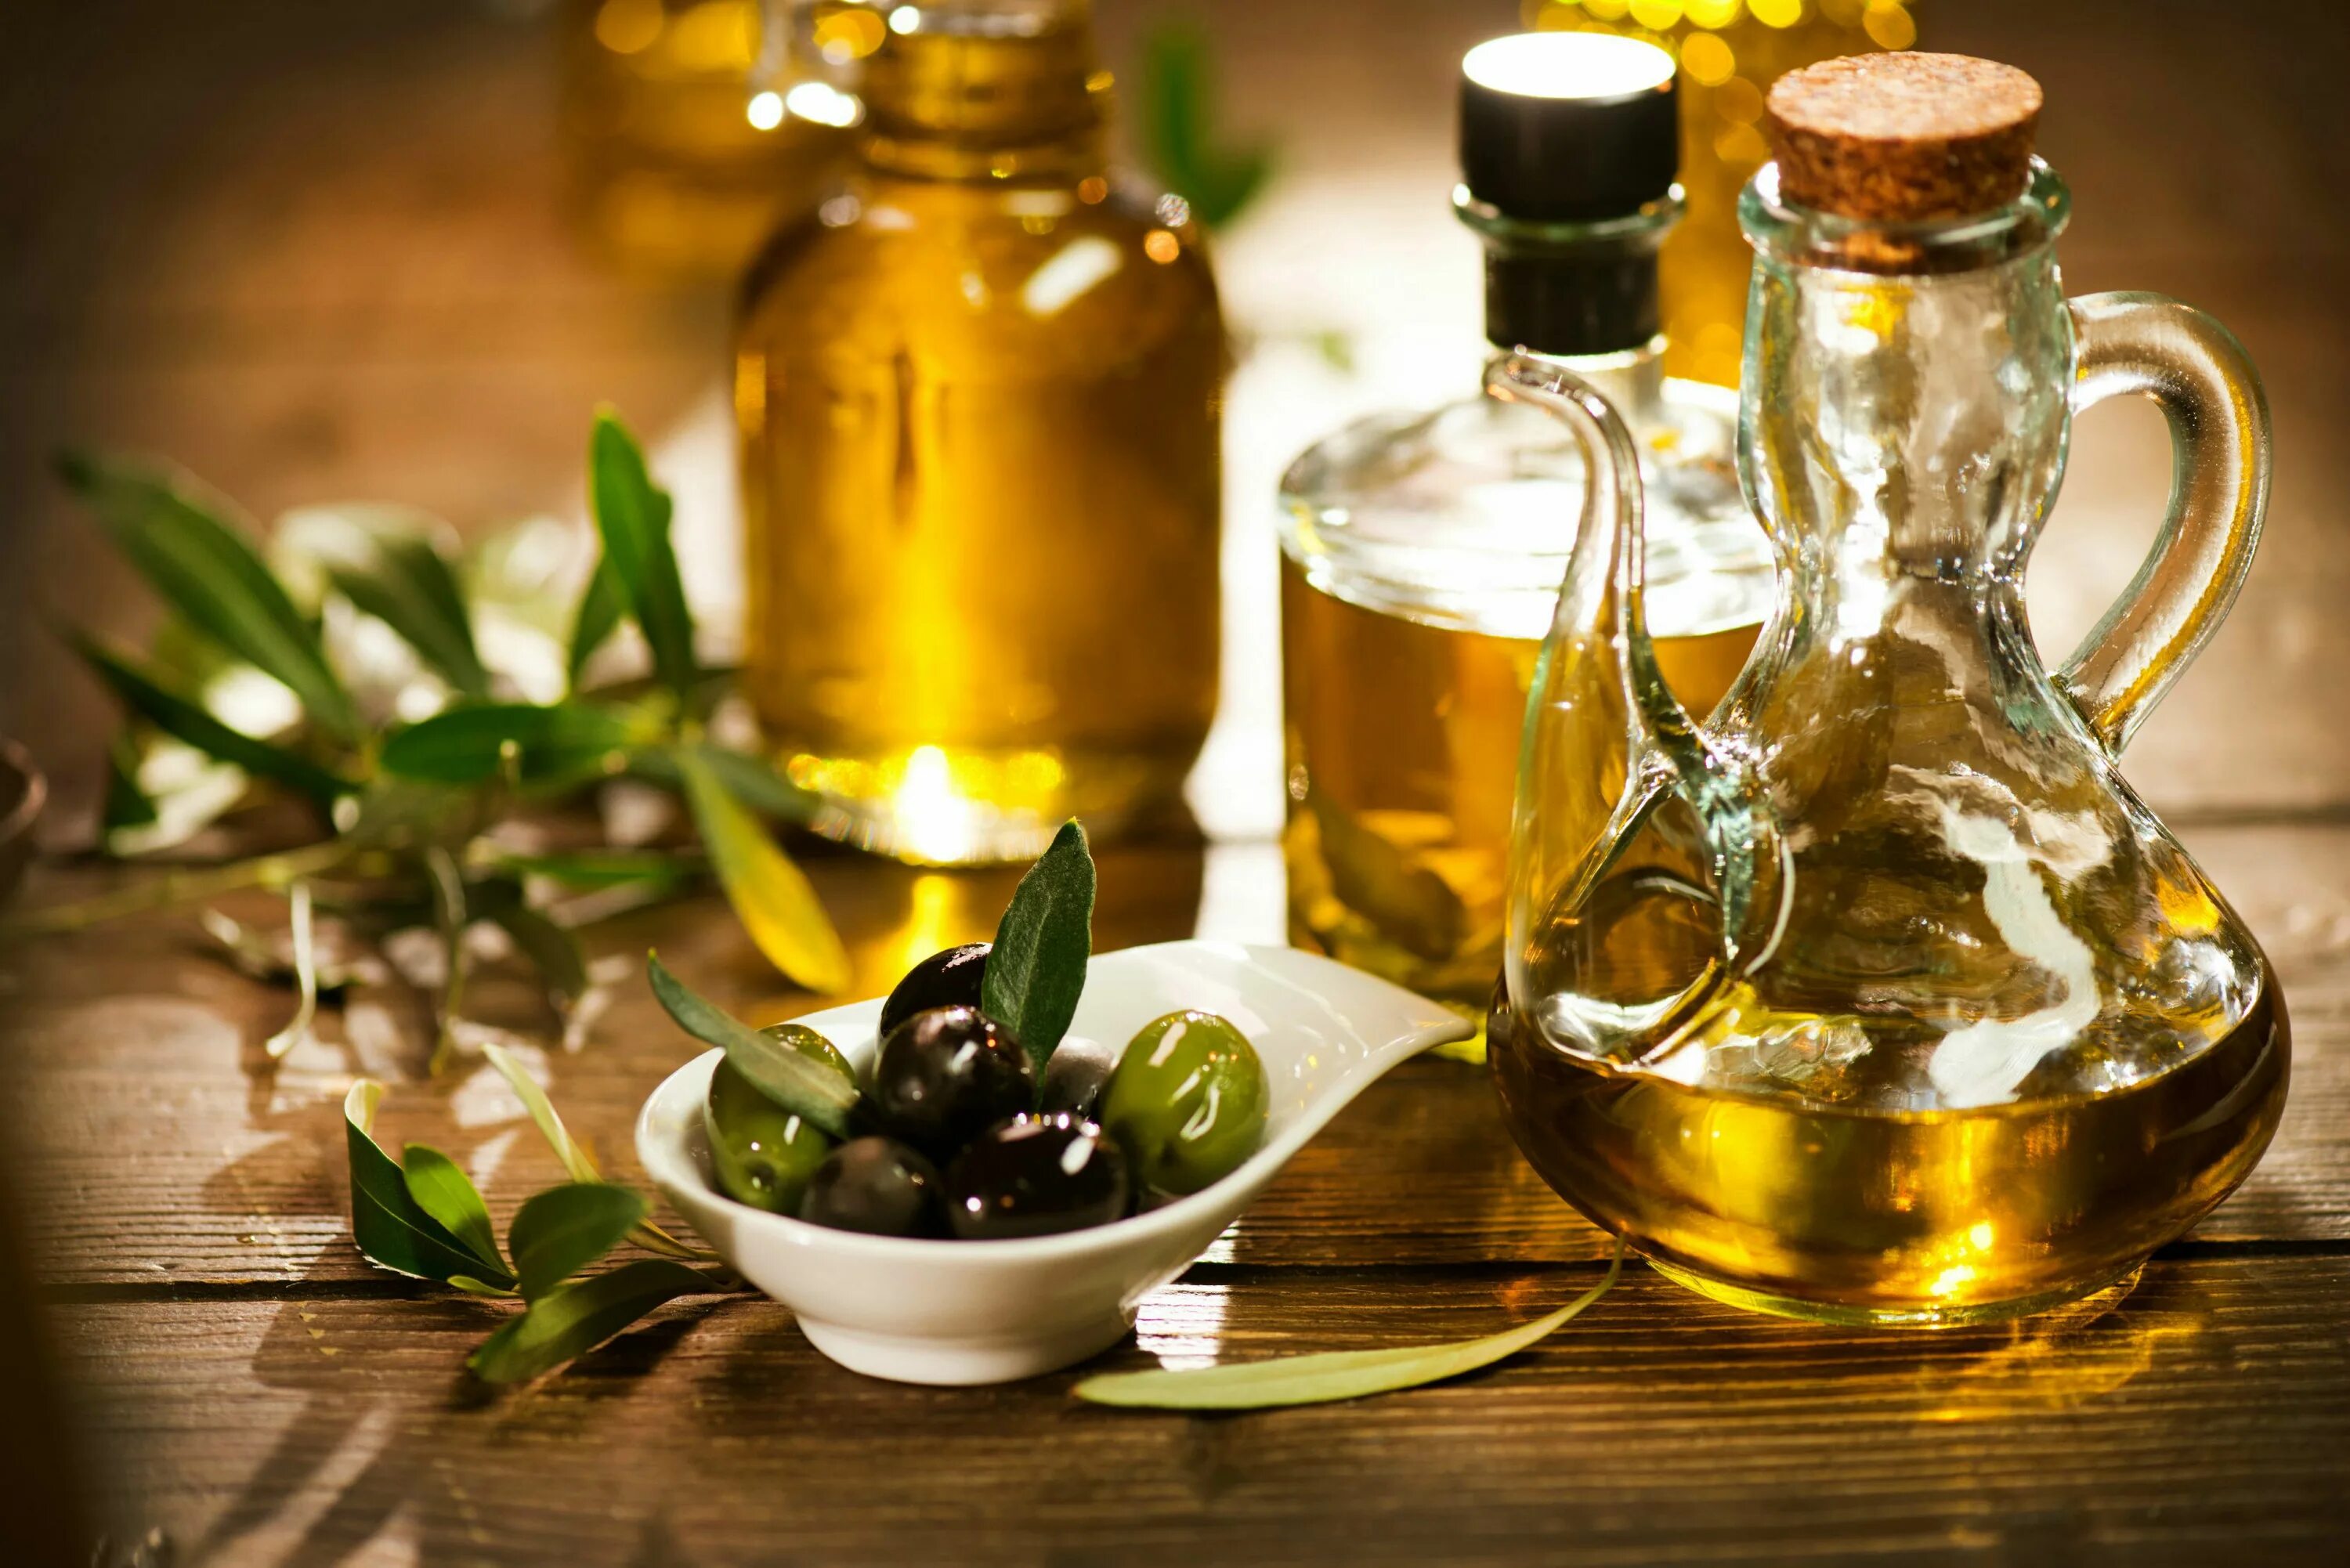 Olive Oil масло оливковое. Олив Ойл масло оливковое. Масло растительное с оливковым. Оливки и оливковое масло. Почему горчит оливковое масло